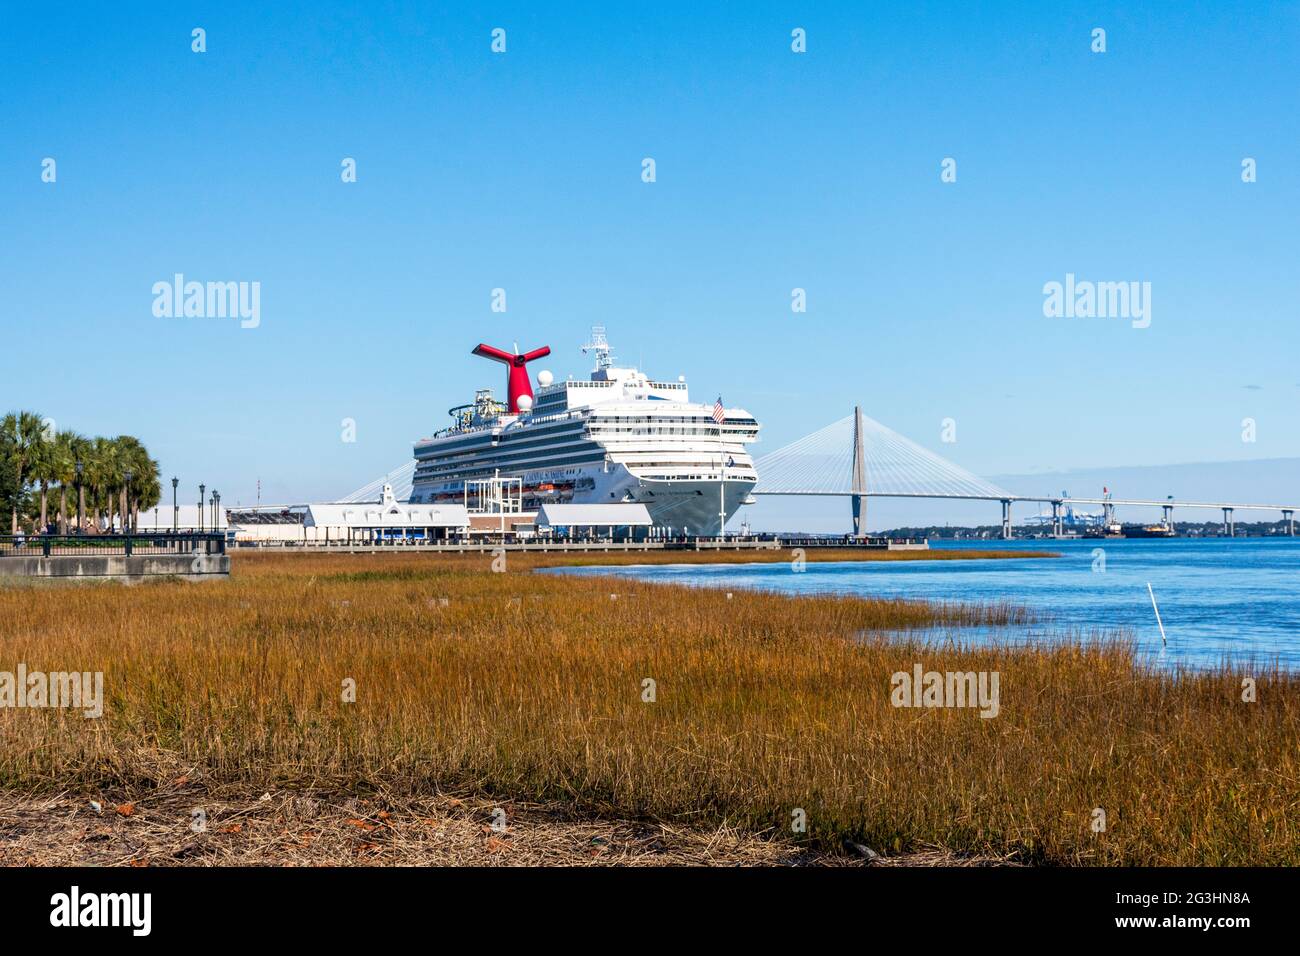 Vom Salzmarsch vor der gobalen Coronavirus-Pandemie aus gesehen, legt ein Schiff in Charleston, South Carolina, an, einem beliebten Ziel für langsame Reisen. Stockfoto